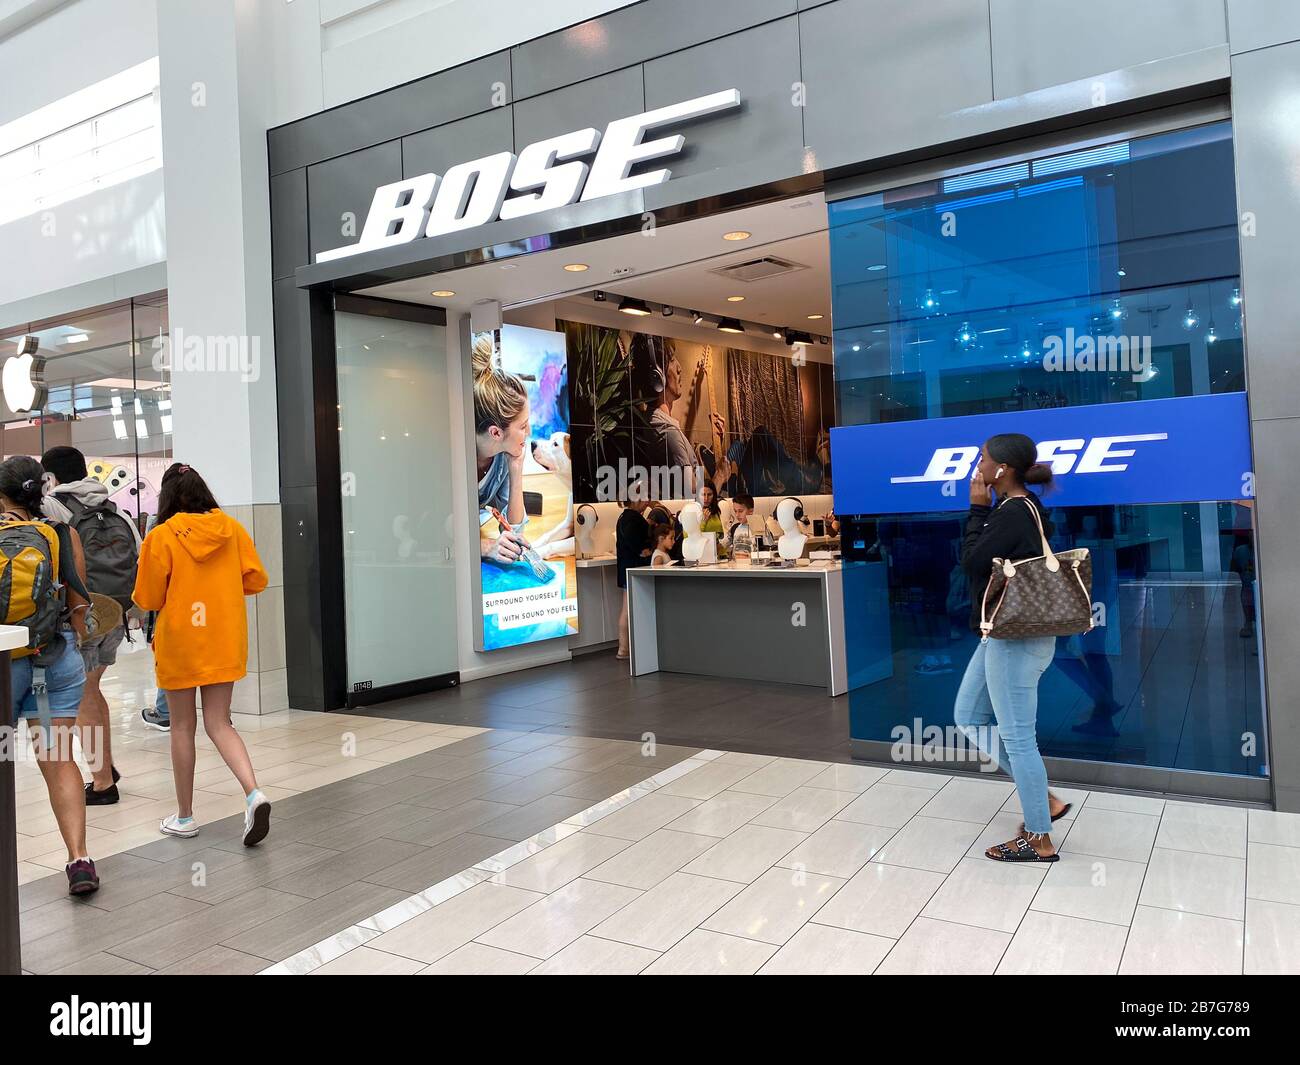 Nodig hebben man Industrialiseren Orlando, FL/USA-2/17/20: A Bose retail speaker store in an indoor mall in  Orlando, FL Stock Photo - Alamy